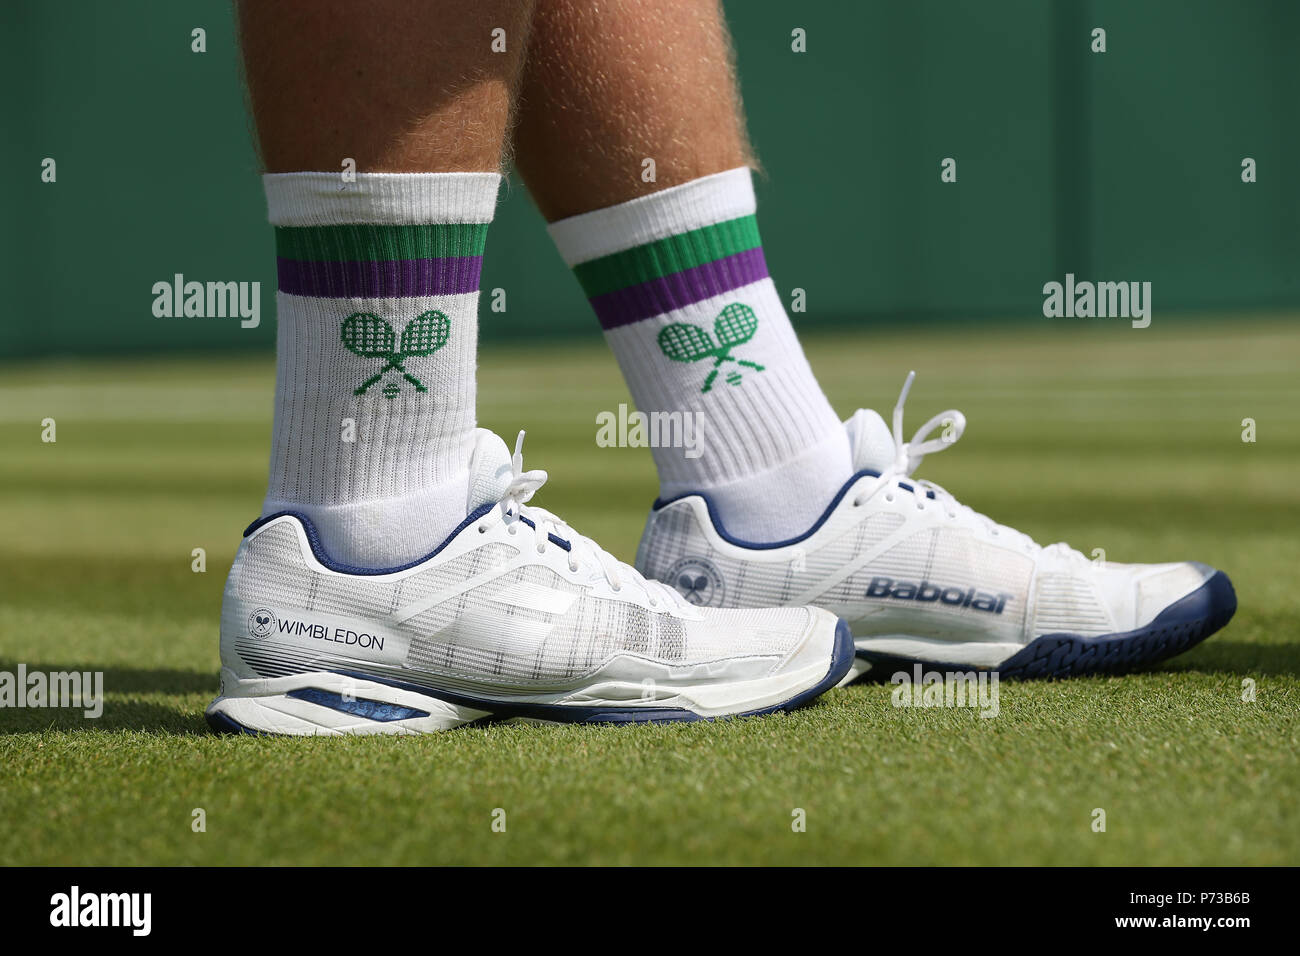 grass court tennis shoes uk